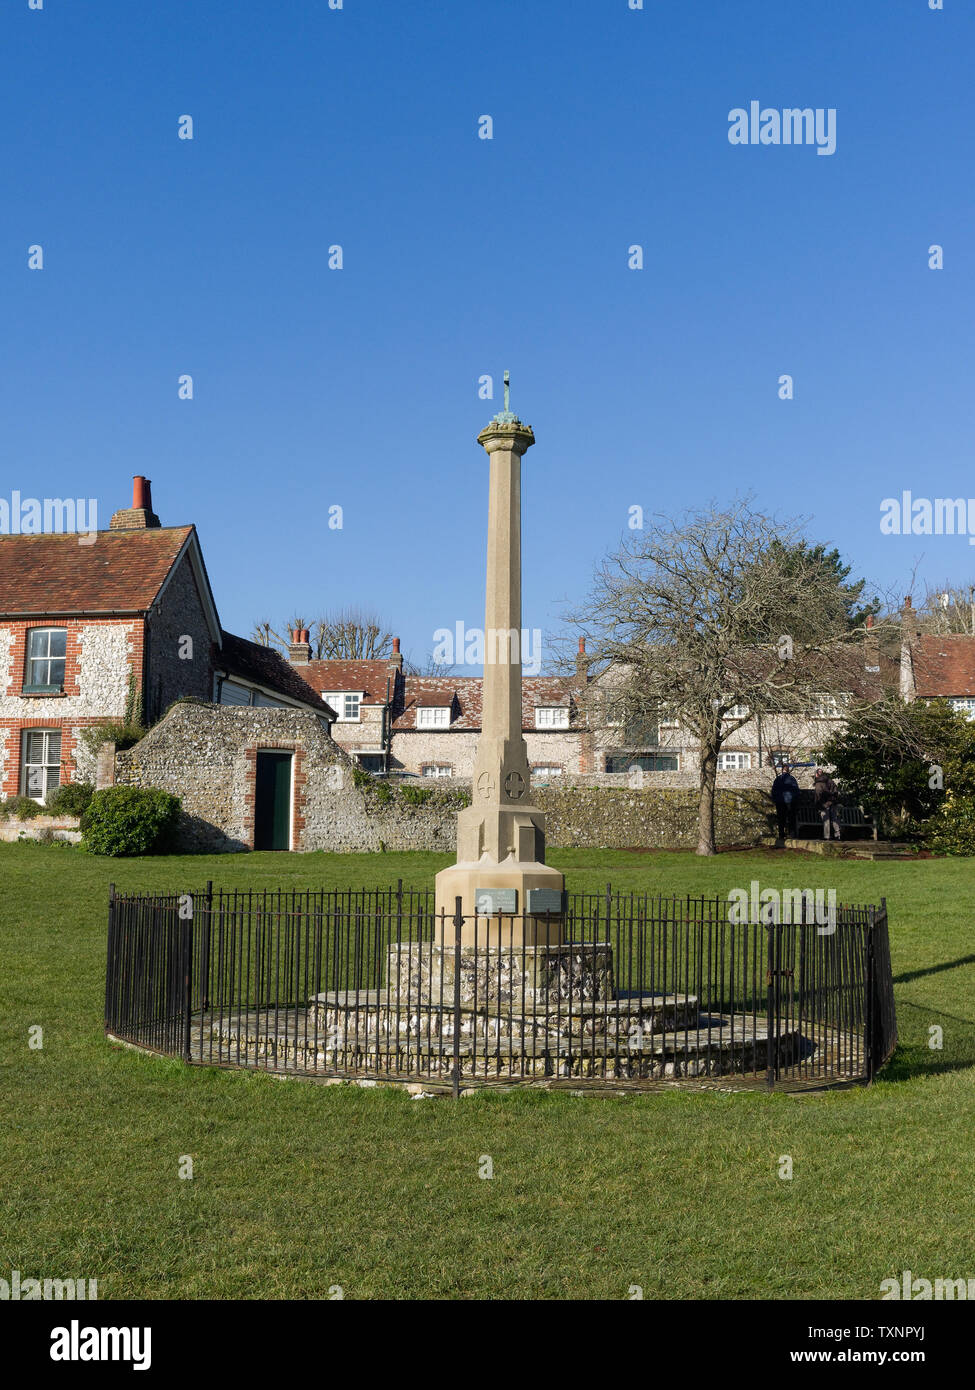 Le mémorial de guerre sur le village vert dans le village East Sussex de East Dean près d'Eastbourne, Royaume-Uni avec espace de copie, le jour d'hiver d'un ciel bleu ensoleillé. Banque D'Images